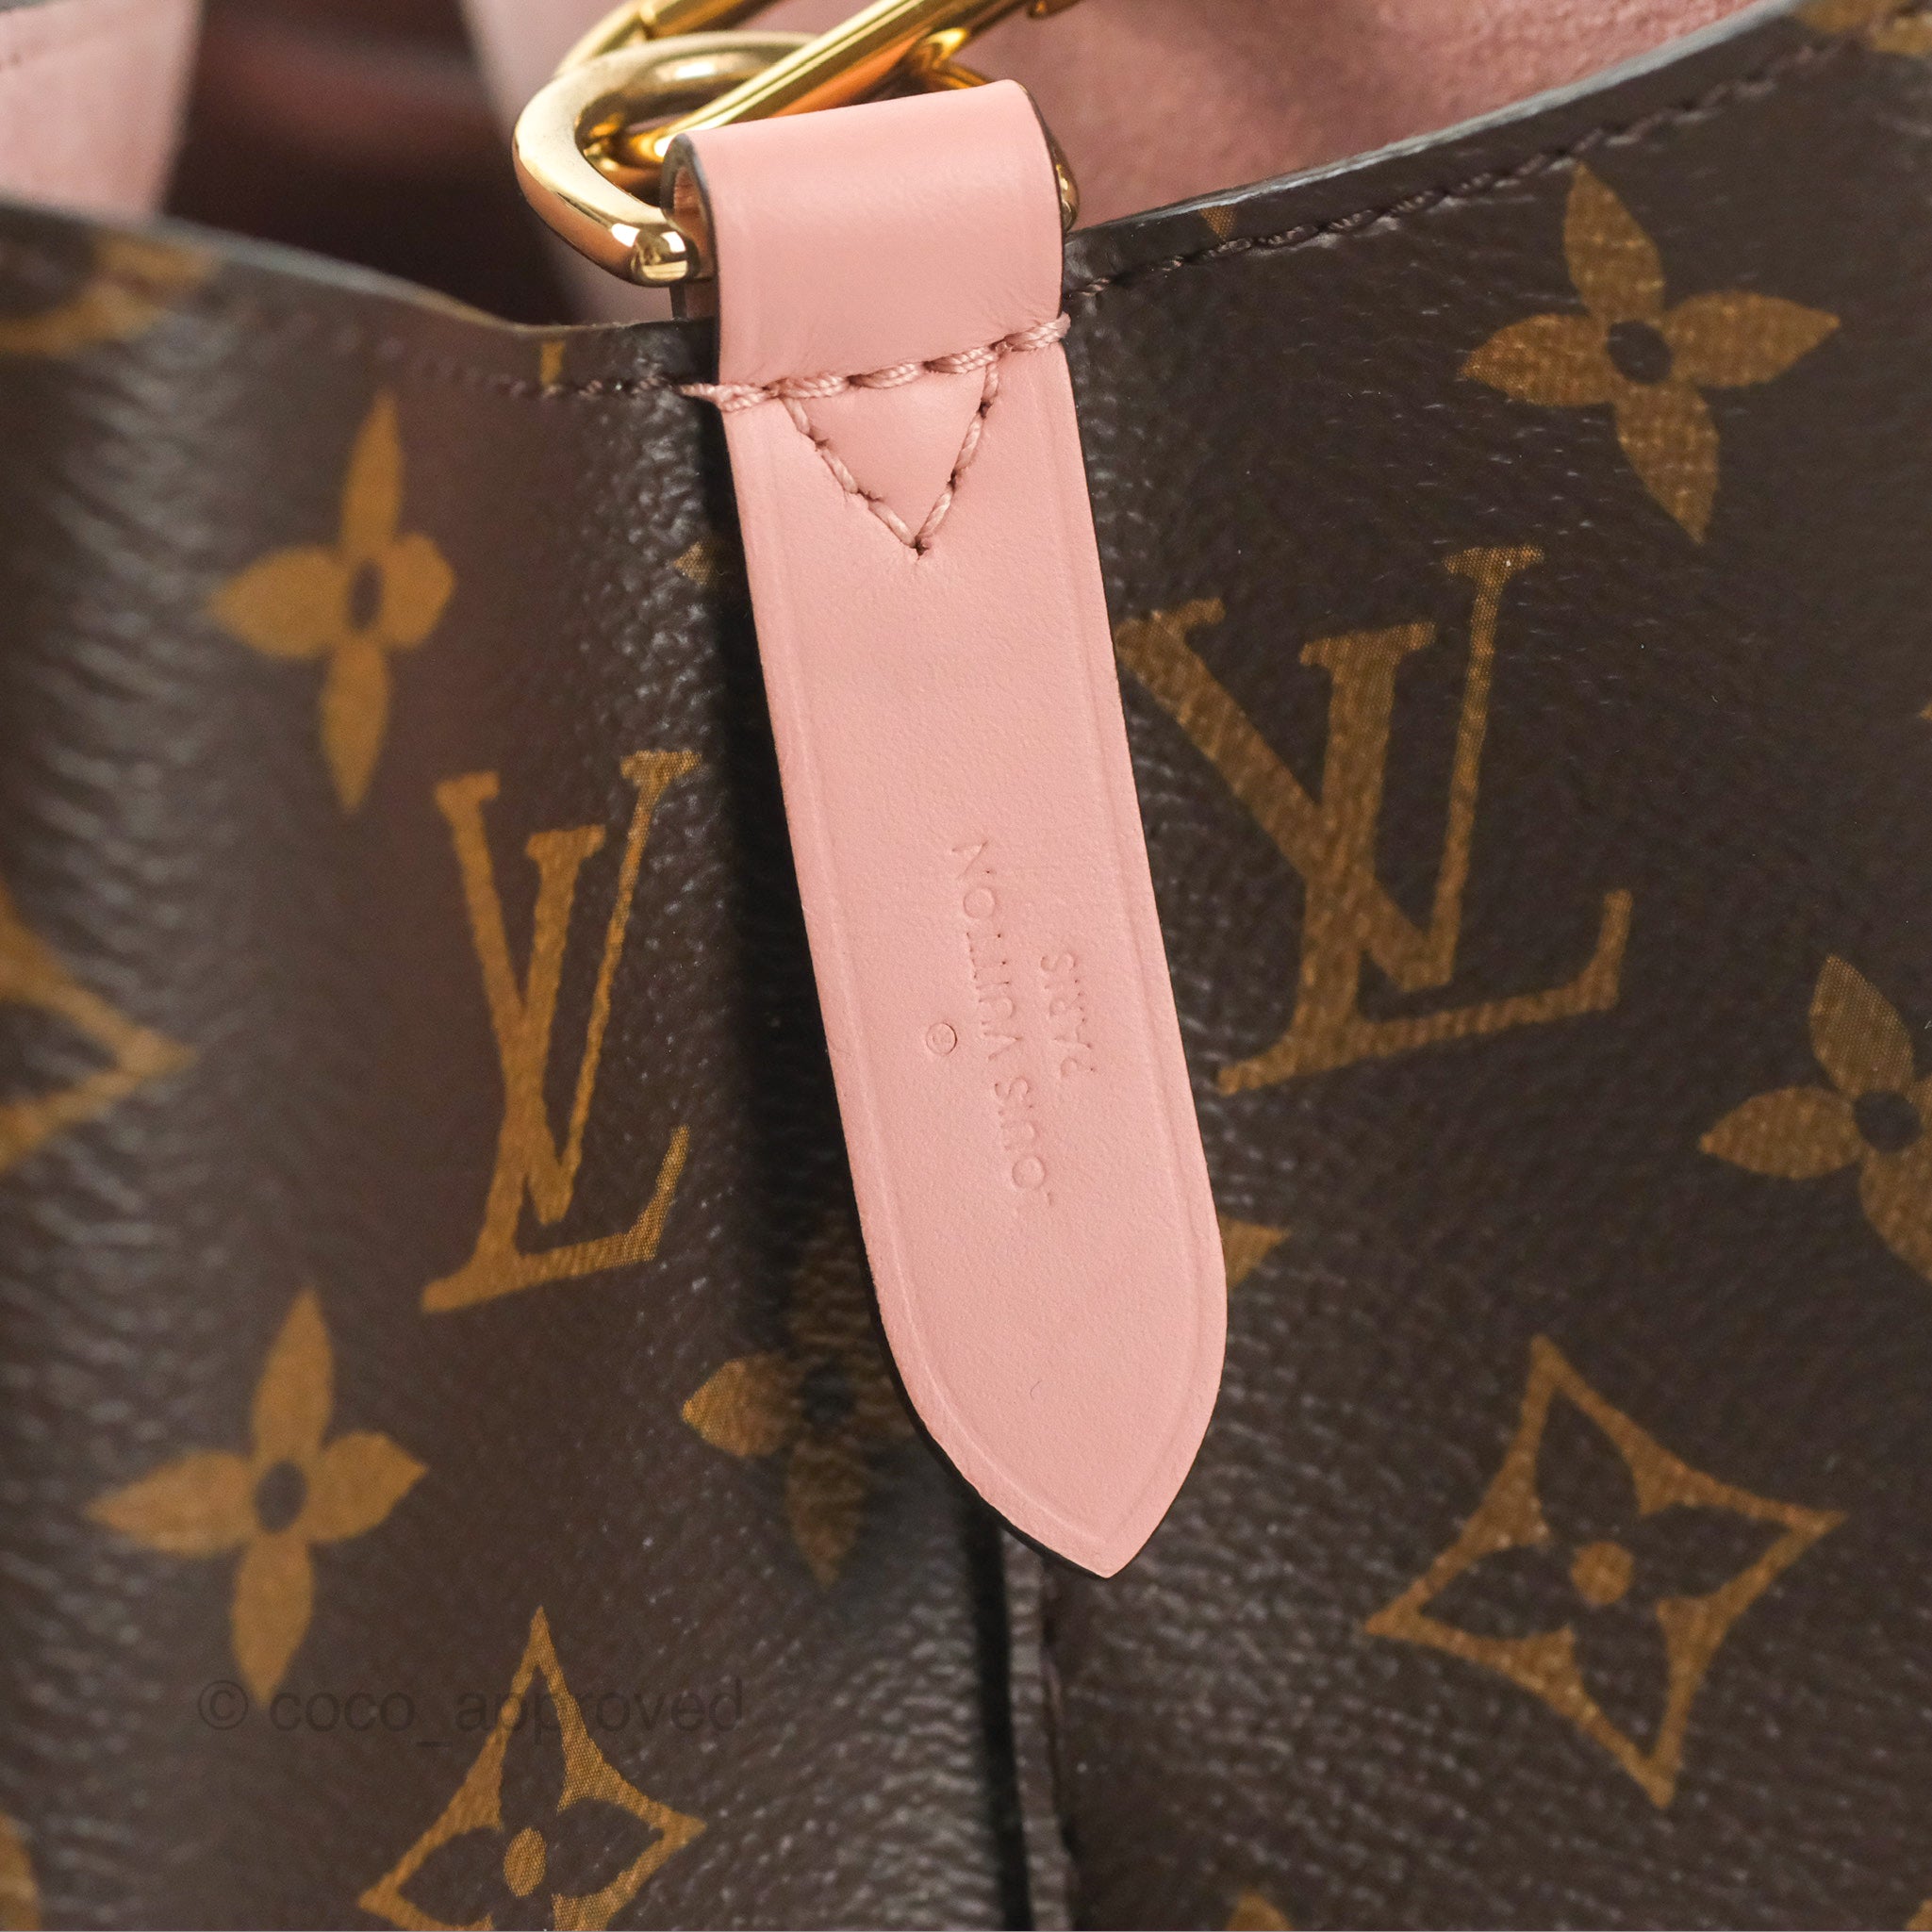 Authentic Louis Vuitton Damier Azur NeoNoe MM Bag